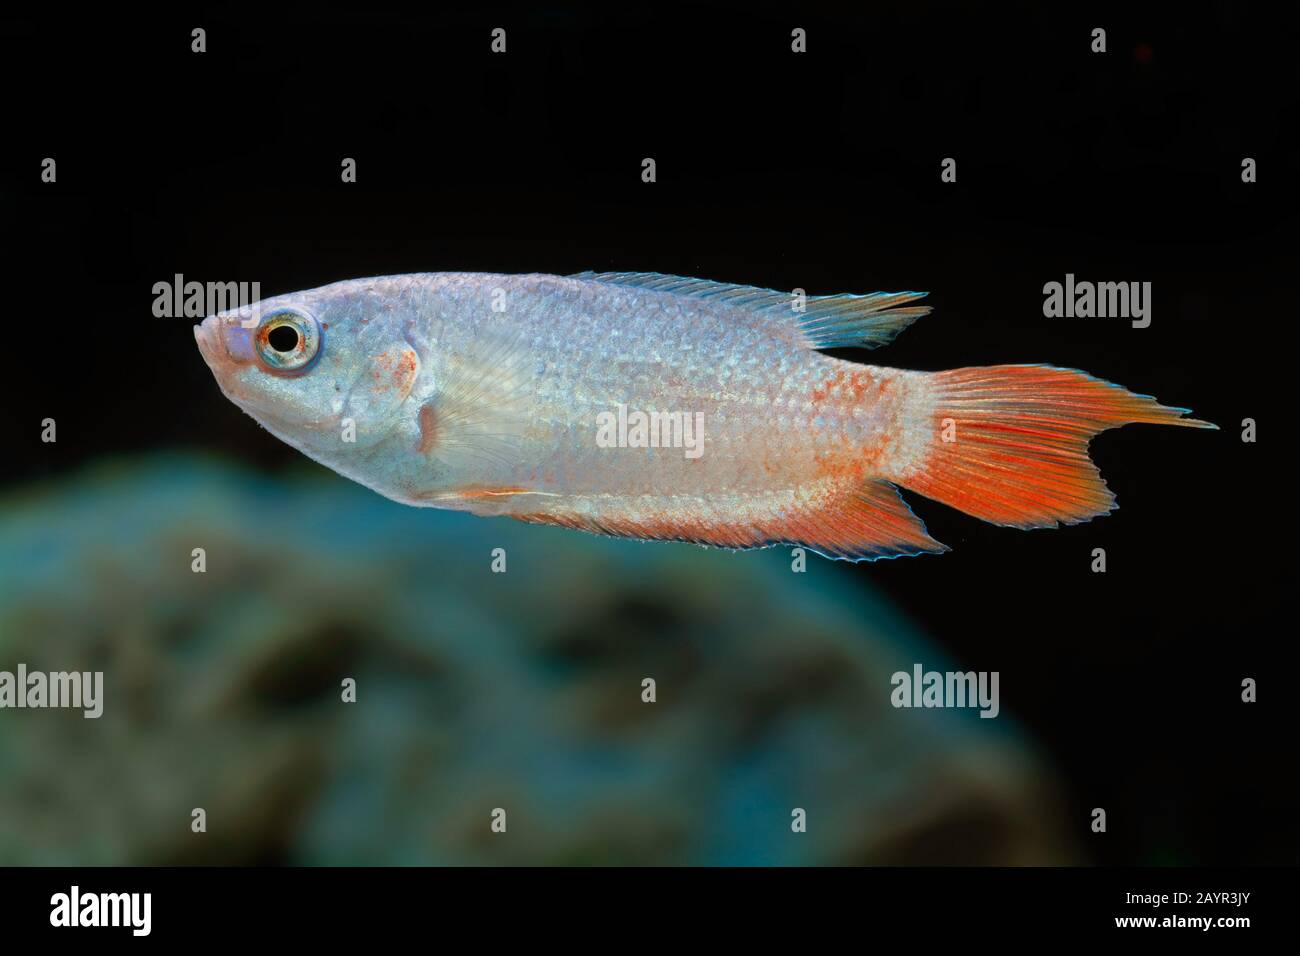 El pescado, el paraíso, el paraíso paradisefish gourami (Macropodus opercularis), natación Foto de stock